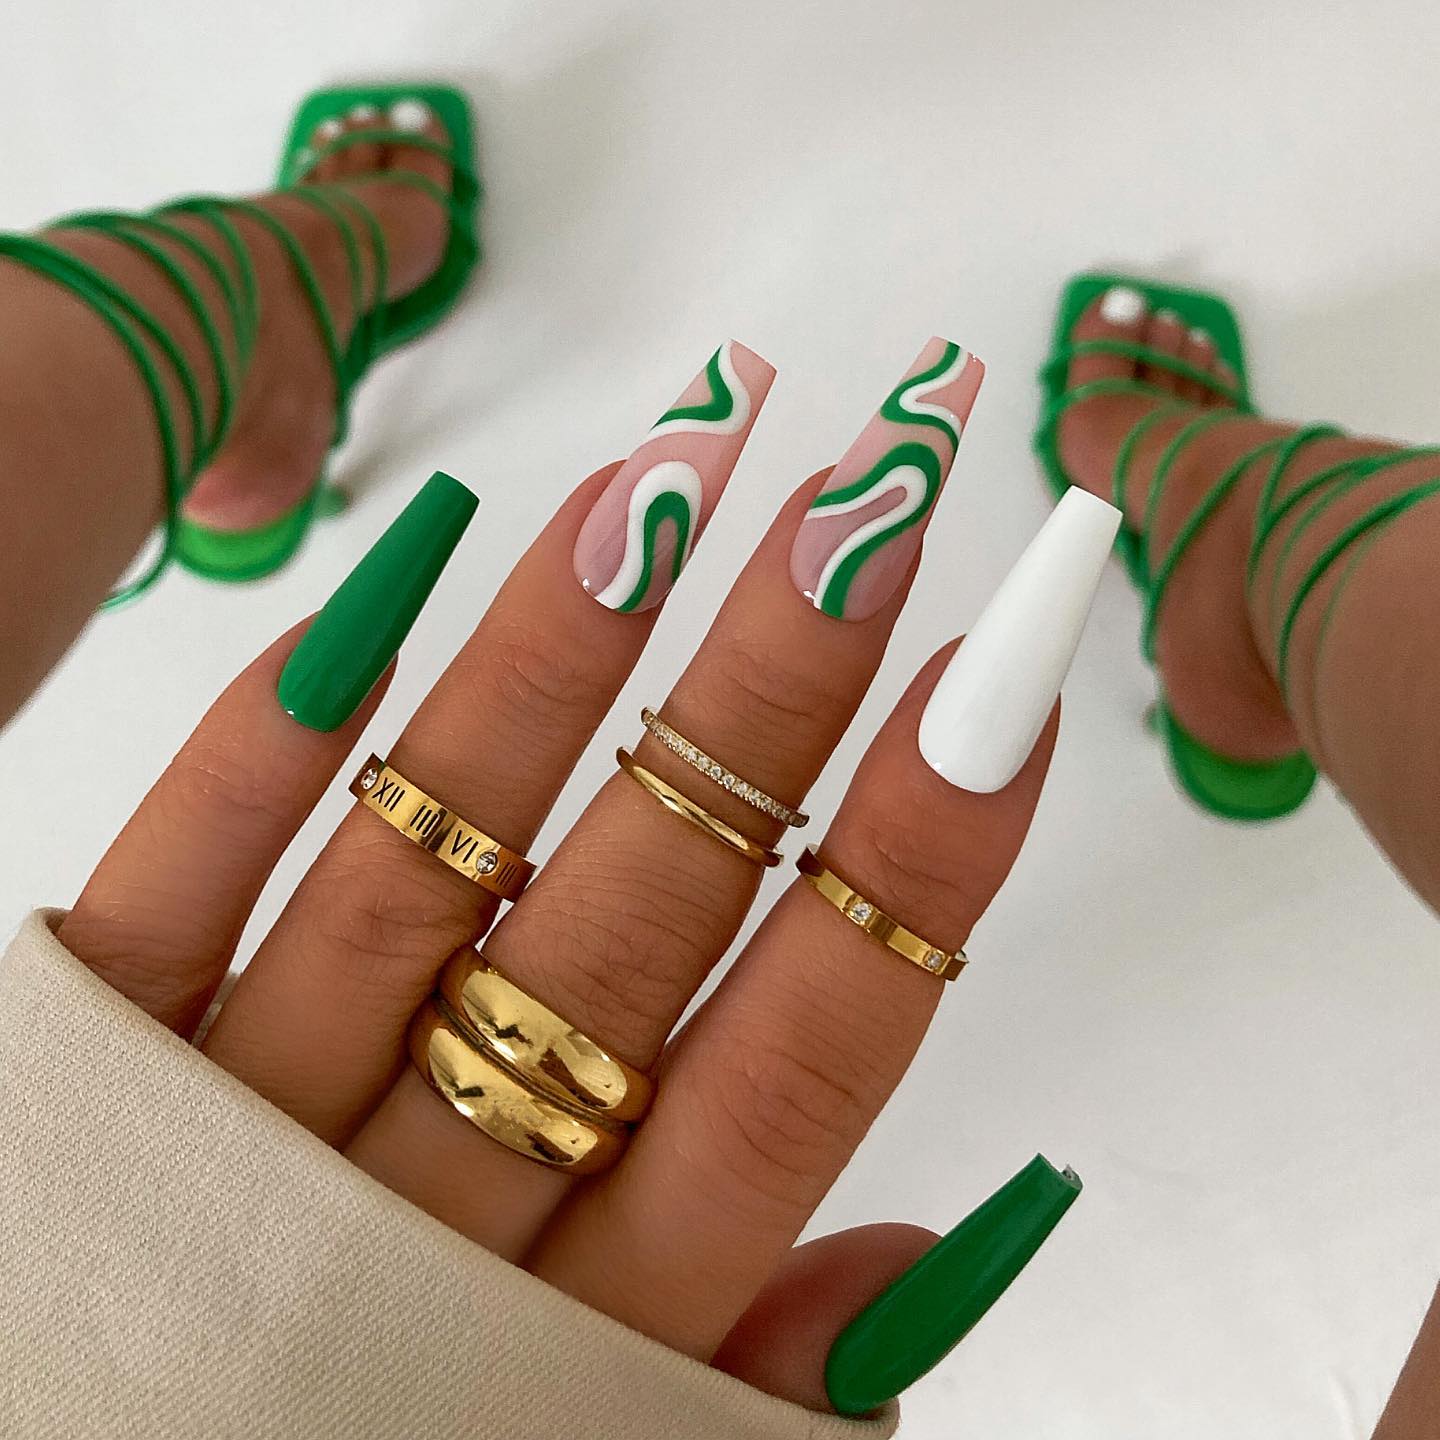 Groene en witte nagels met wervelingen